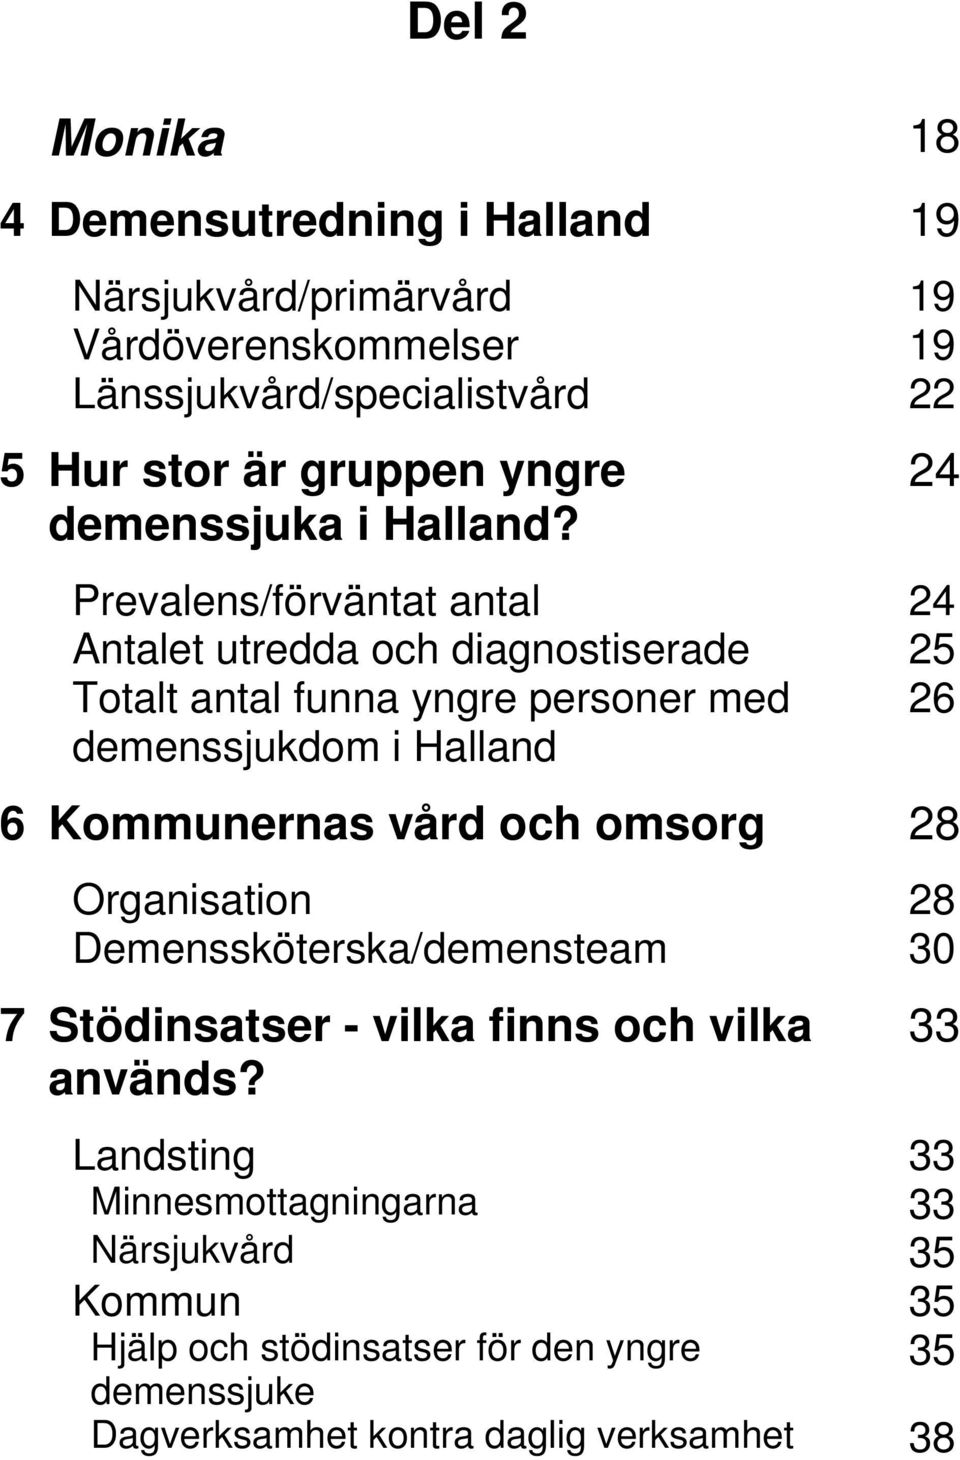 24 Prevalens/förväntat antal 24 Antalet utredda och diagnostiserade 25 Totalt antal funna yngre personer med 26 demenssjukdom i Halland 6 Kommunernas